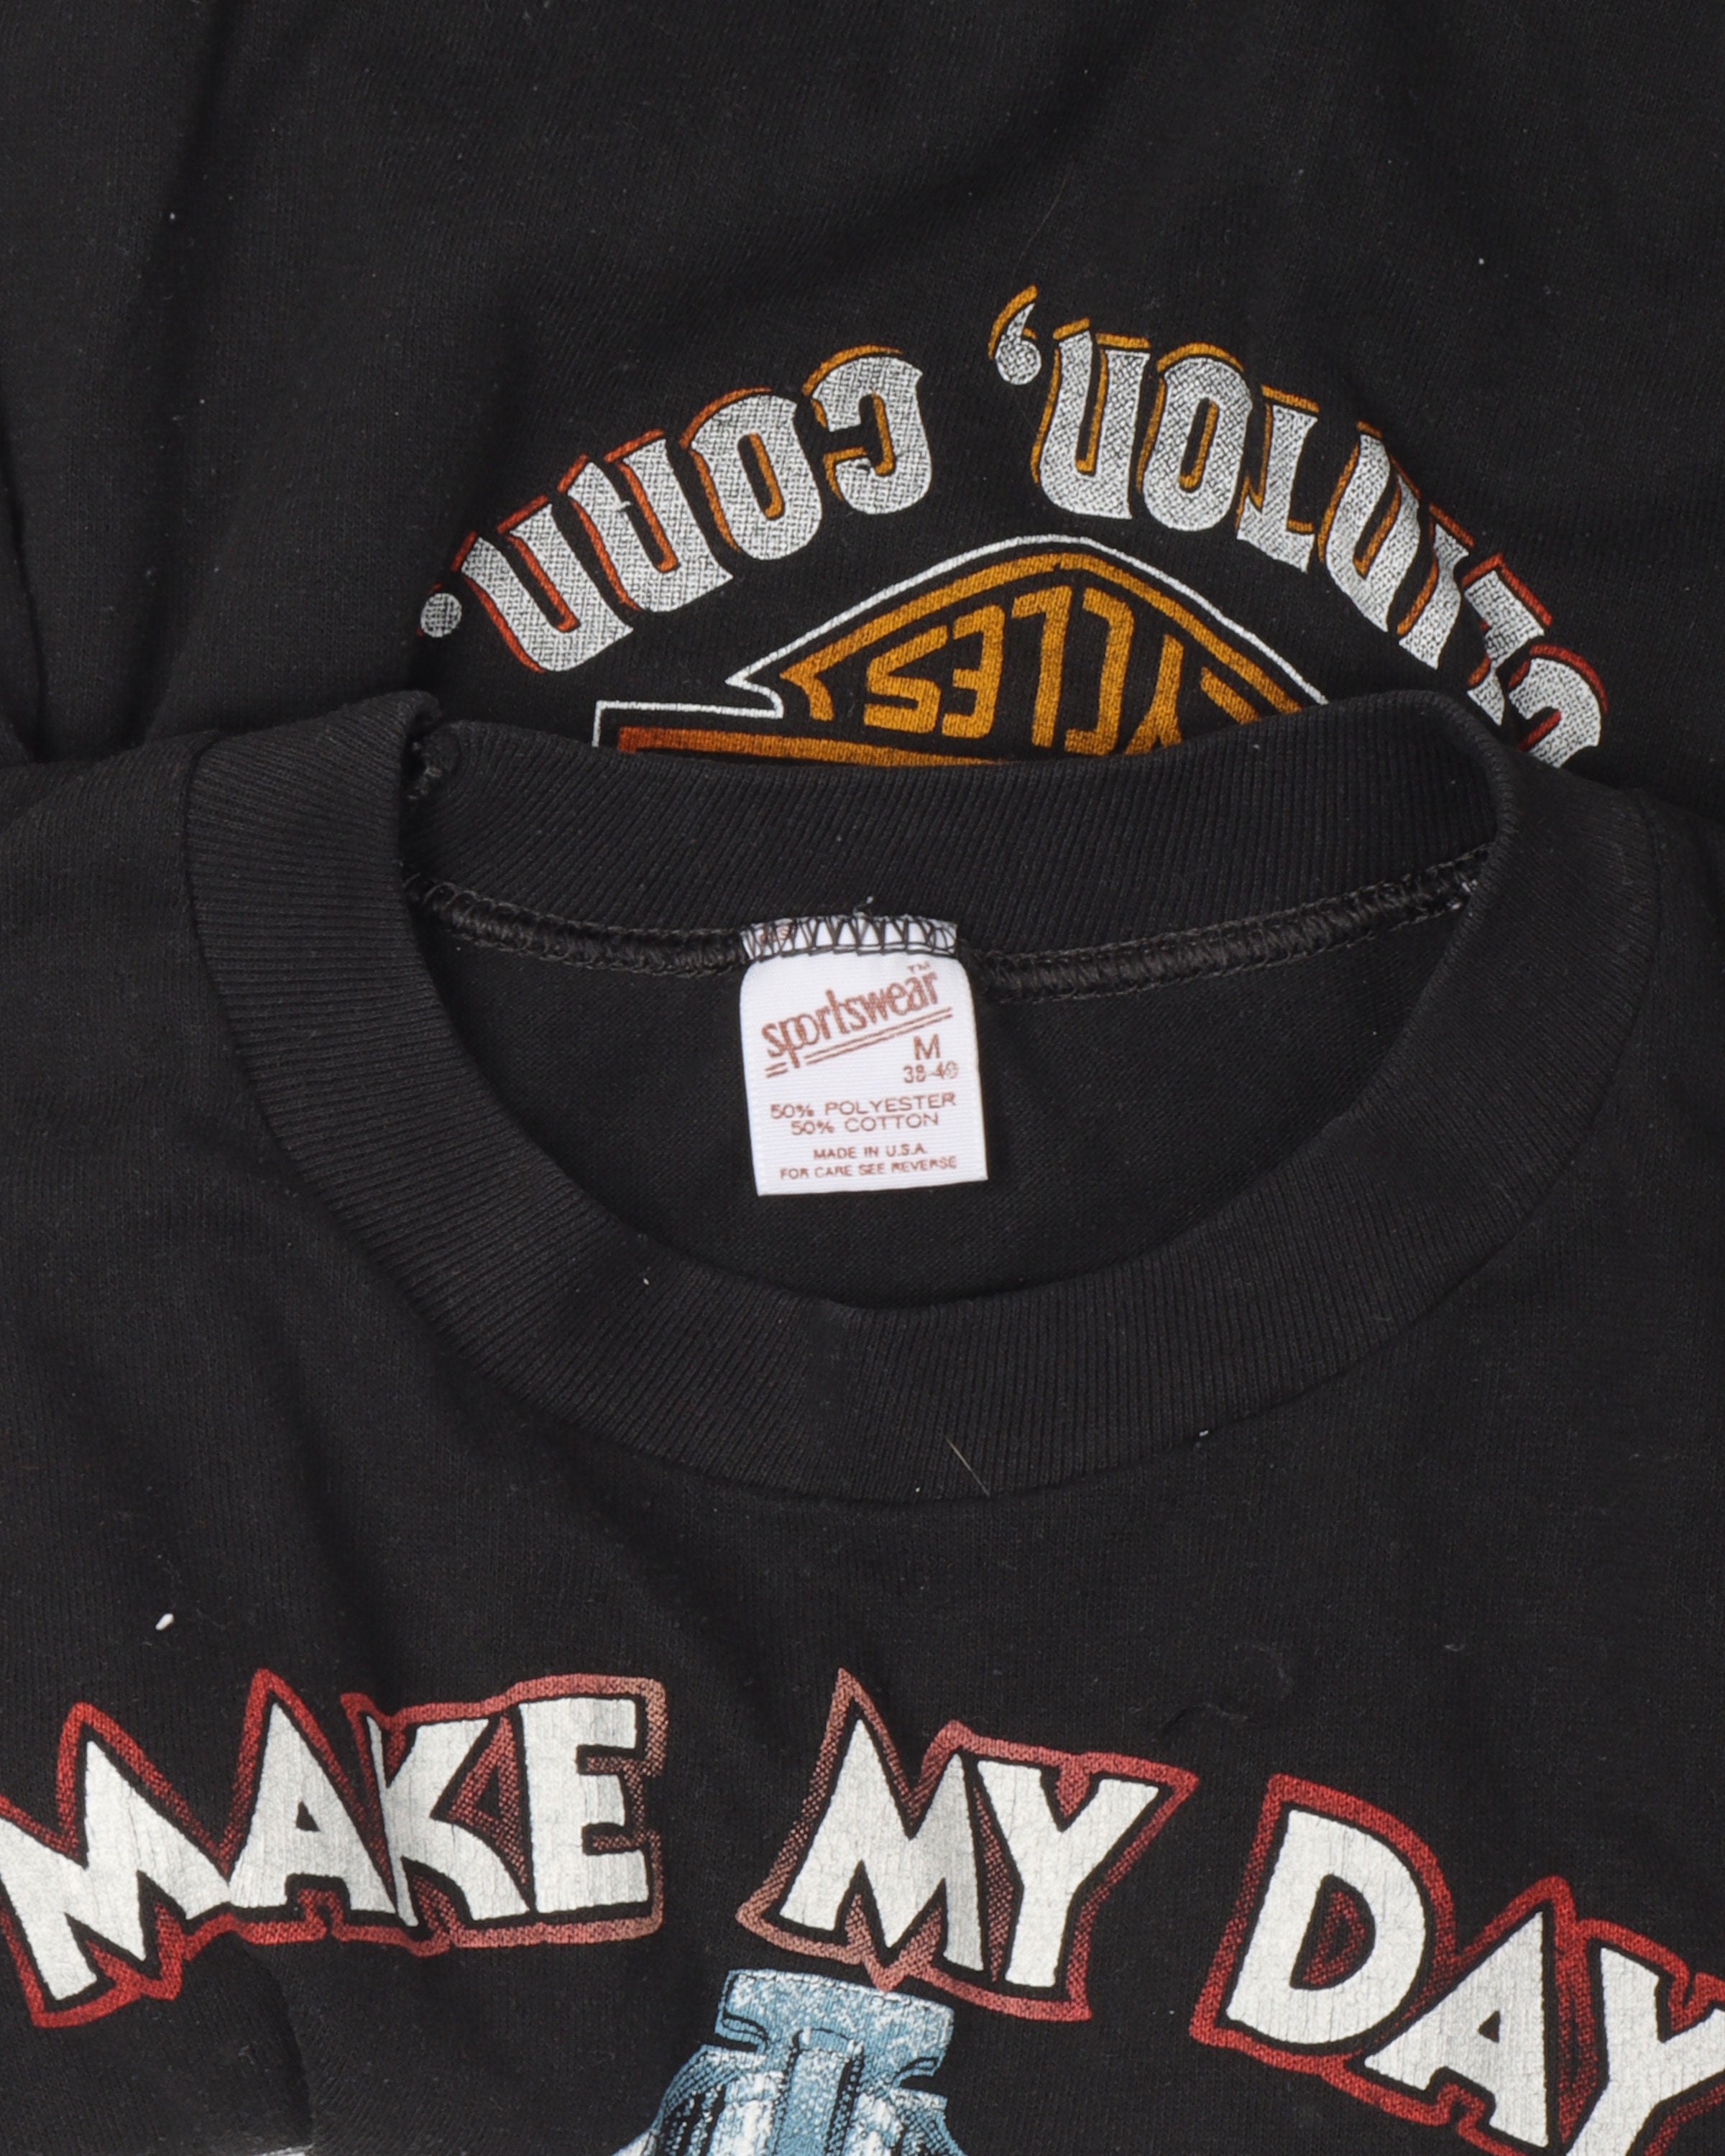 Harley Davidson 'Make My Day' T-Shirt